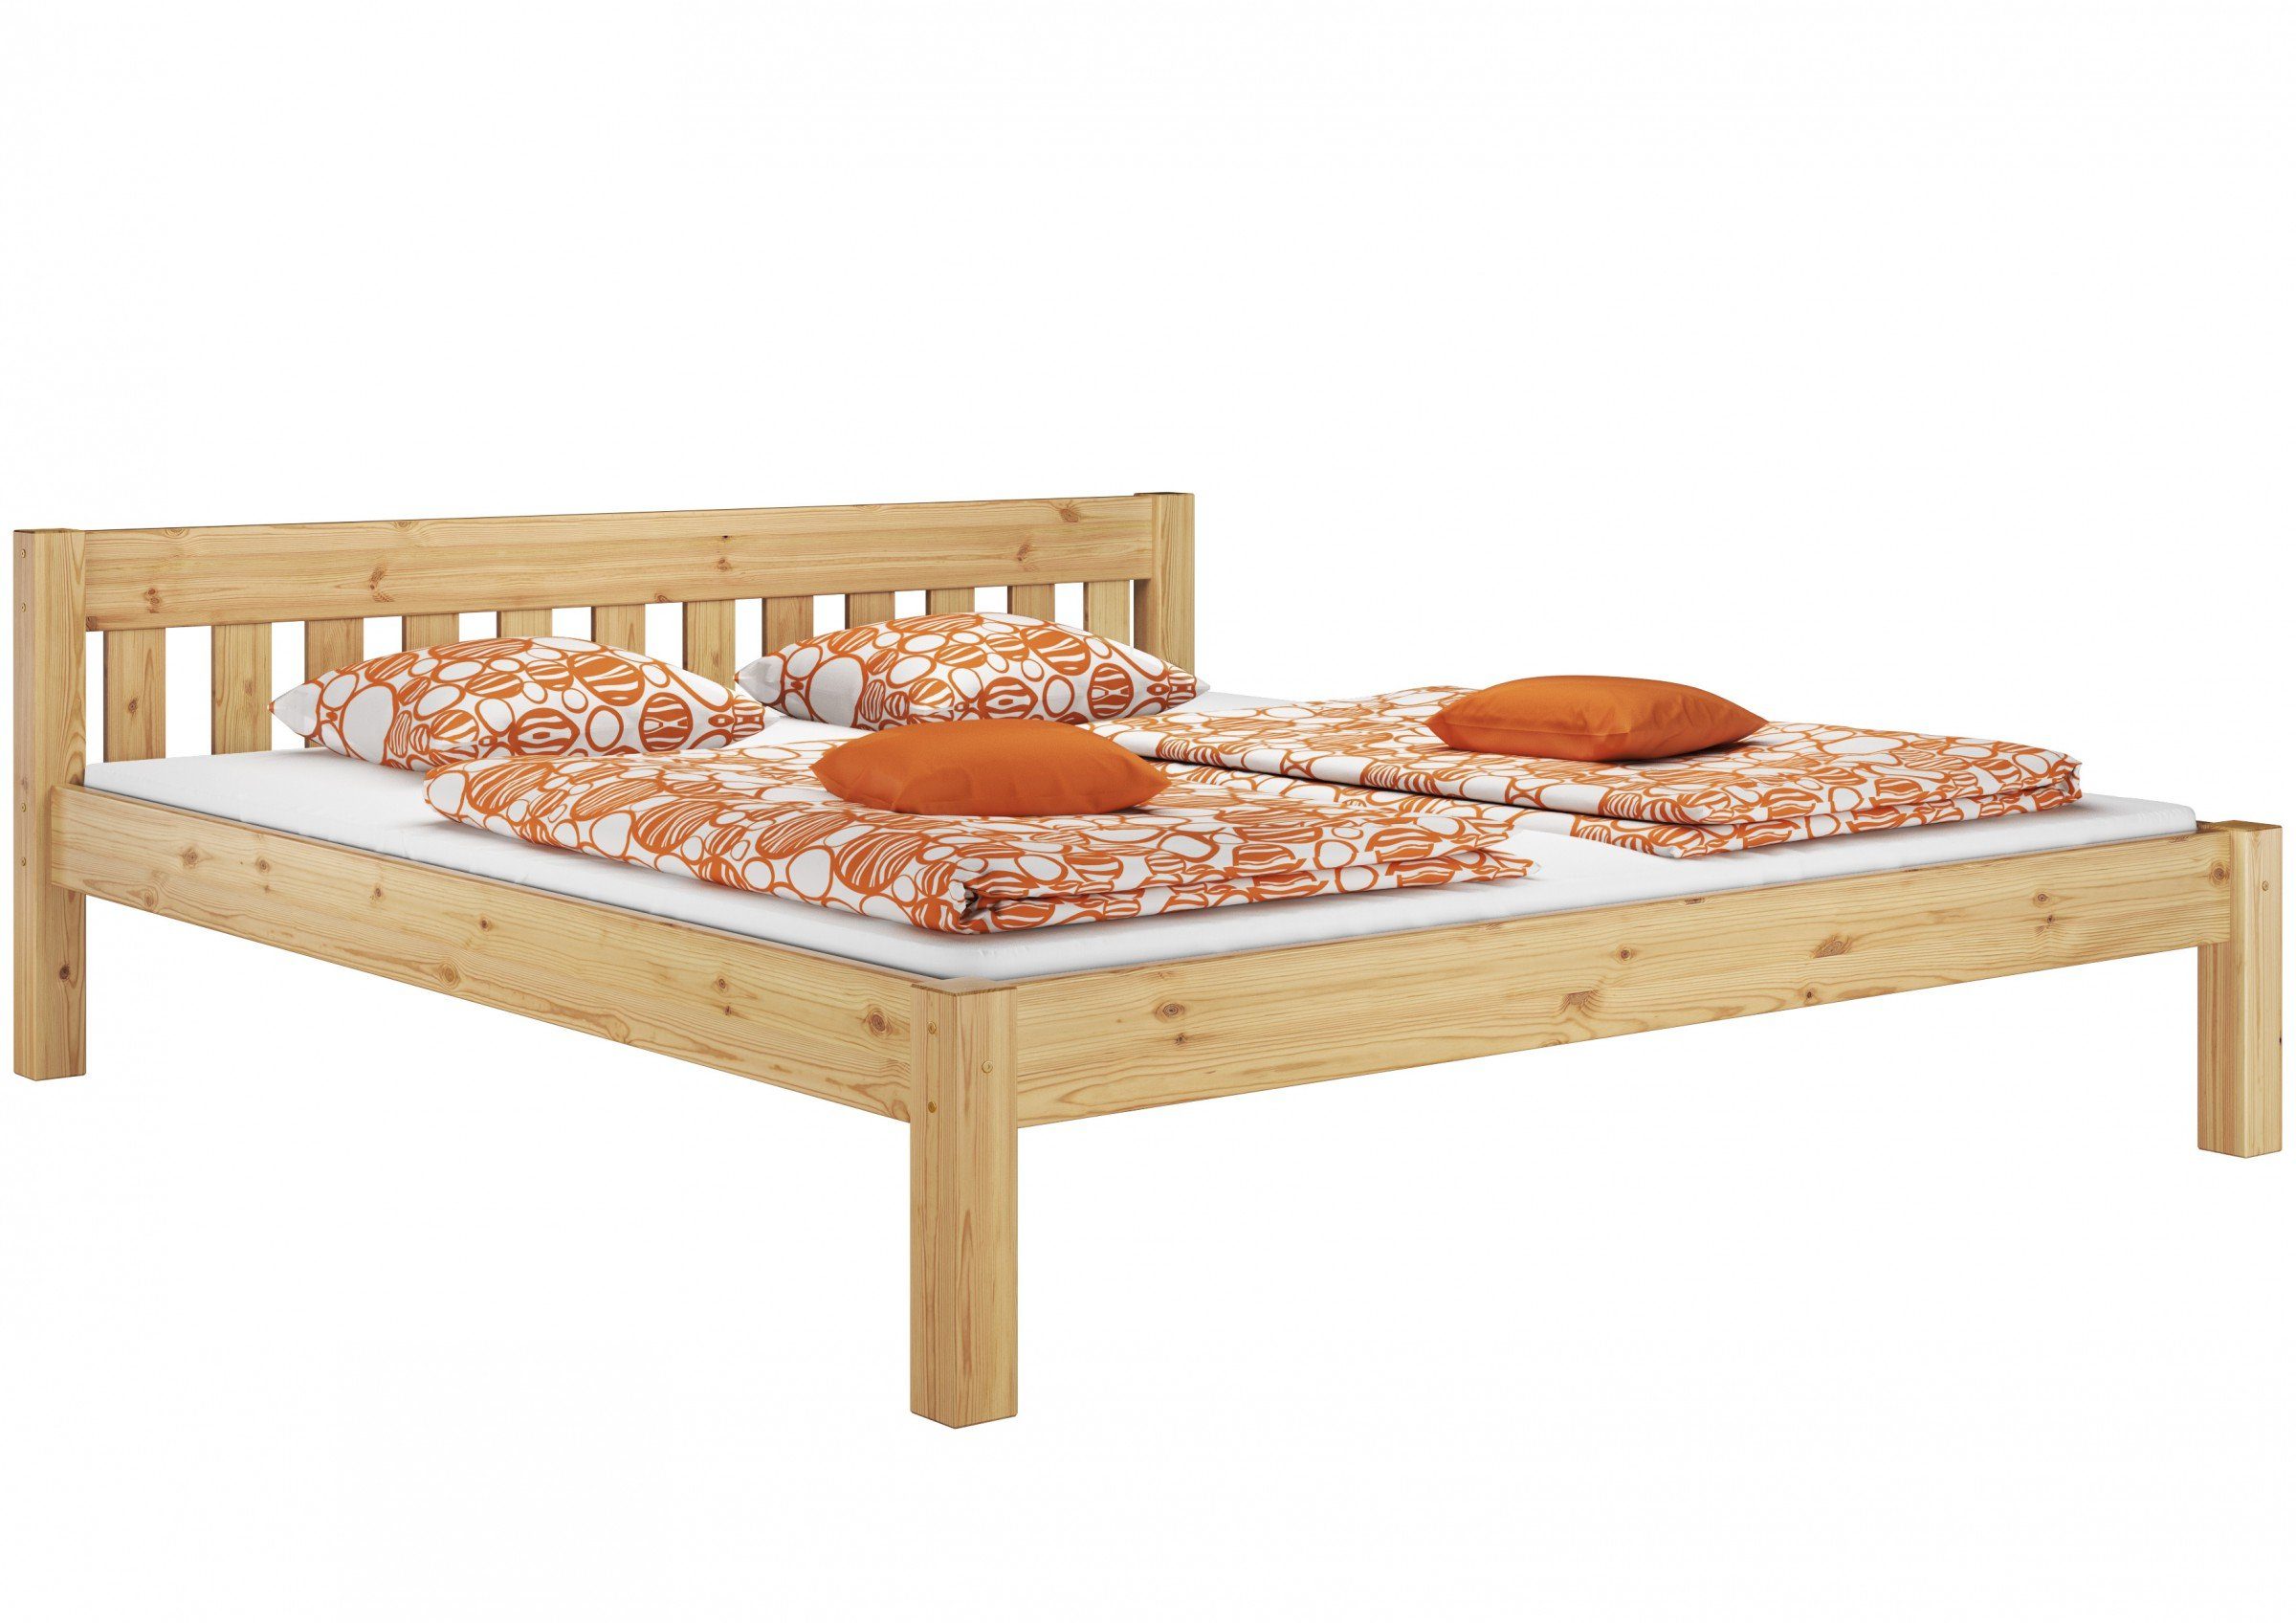 ERST-HOLZ Bett Doppelbett mit zwei Matratzen und Rost 180x200, Kieferfarblos lackiert